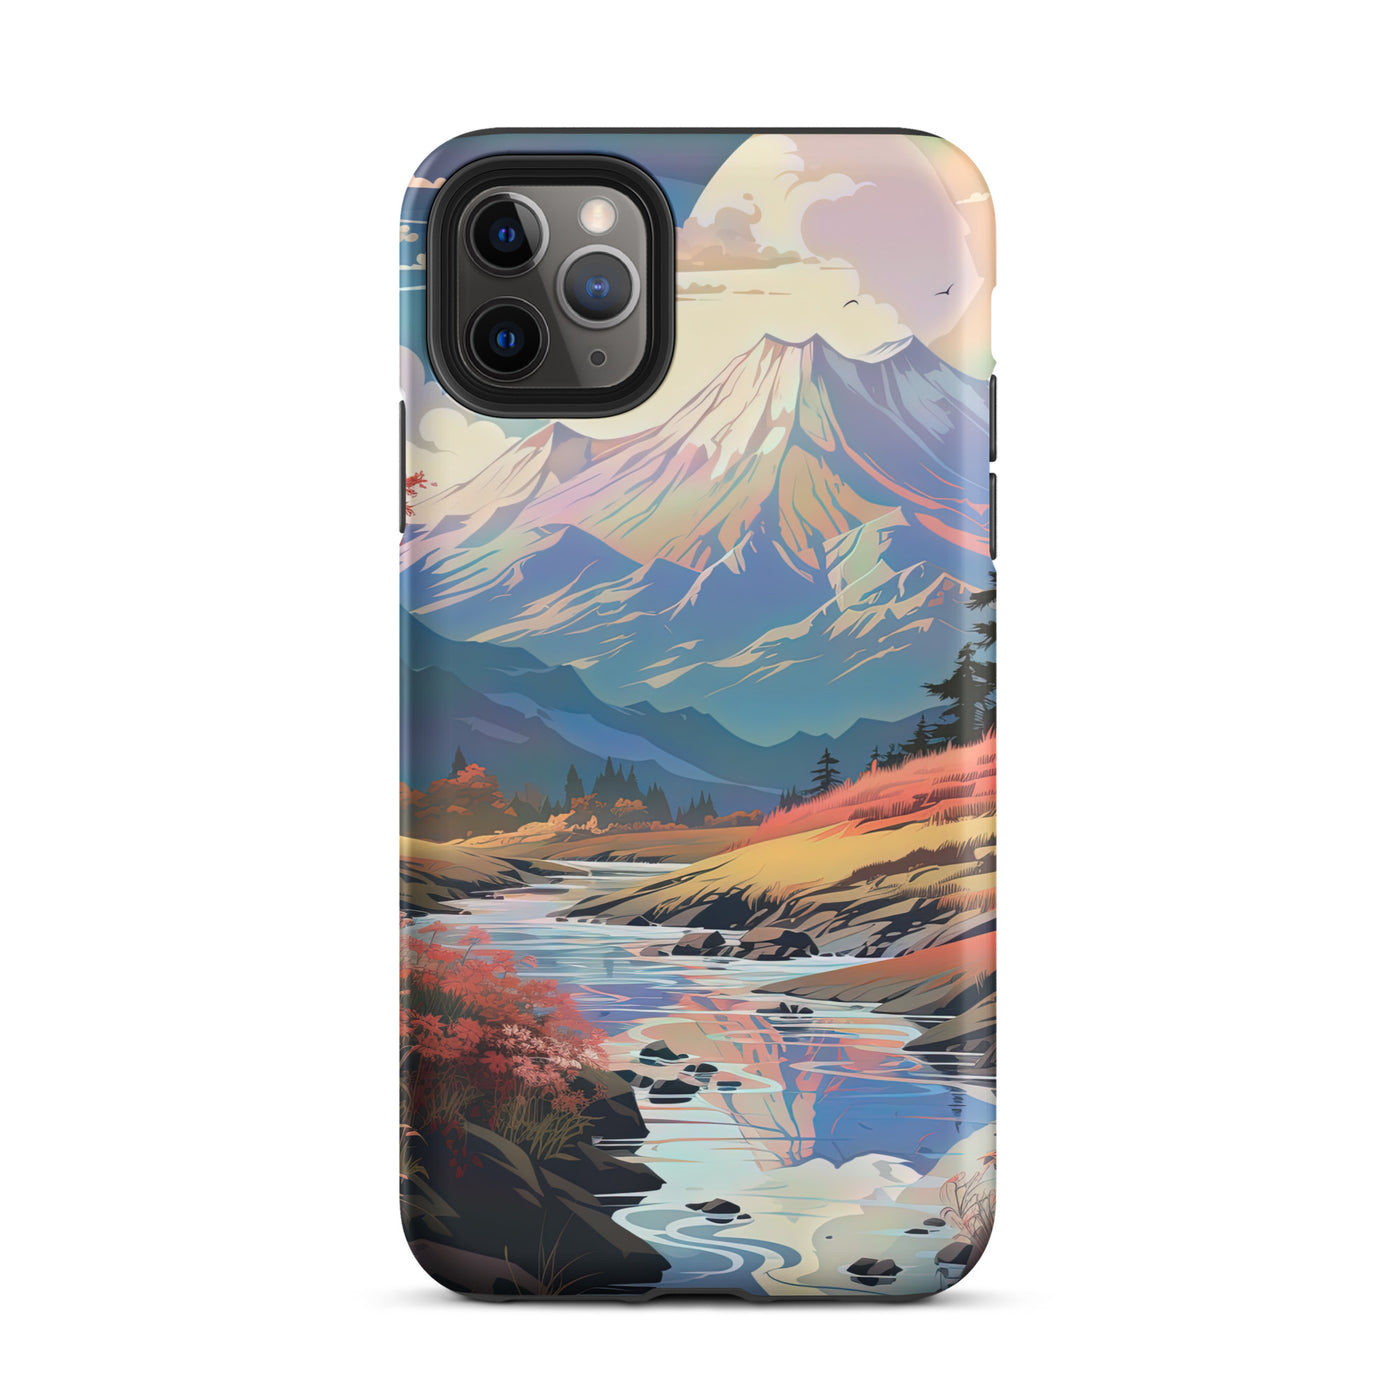 Berge. Fluss und Blumen - Malerei - iPhone Schutzhülle (robust) berge xxx iPhone 11 Pro Max